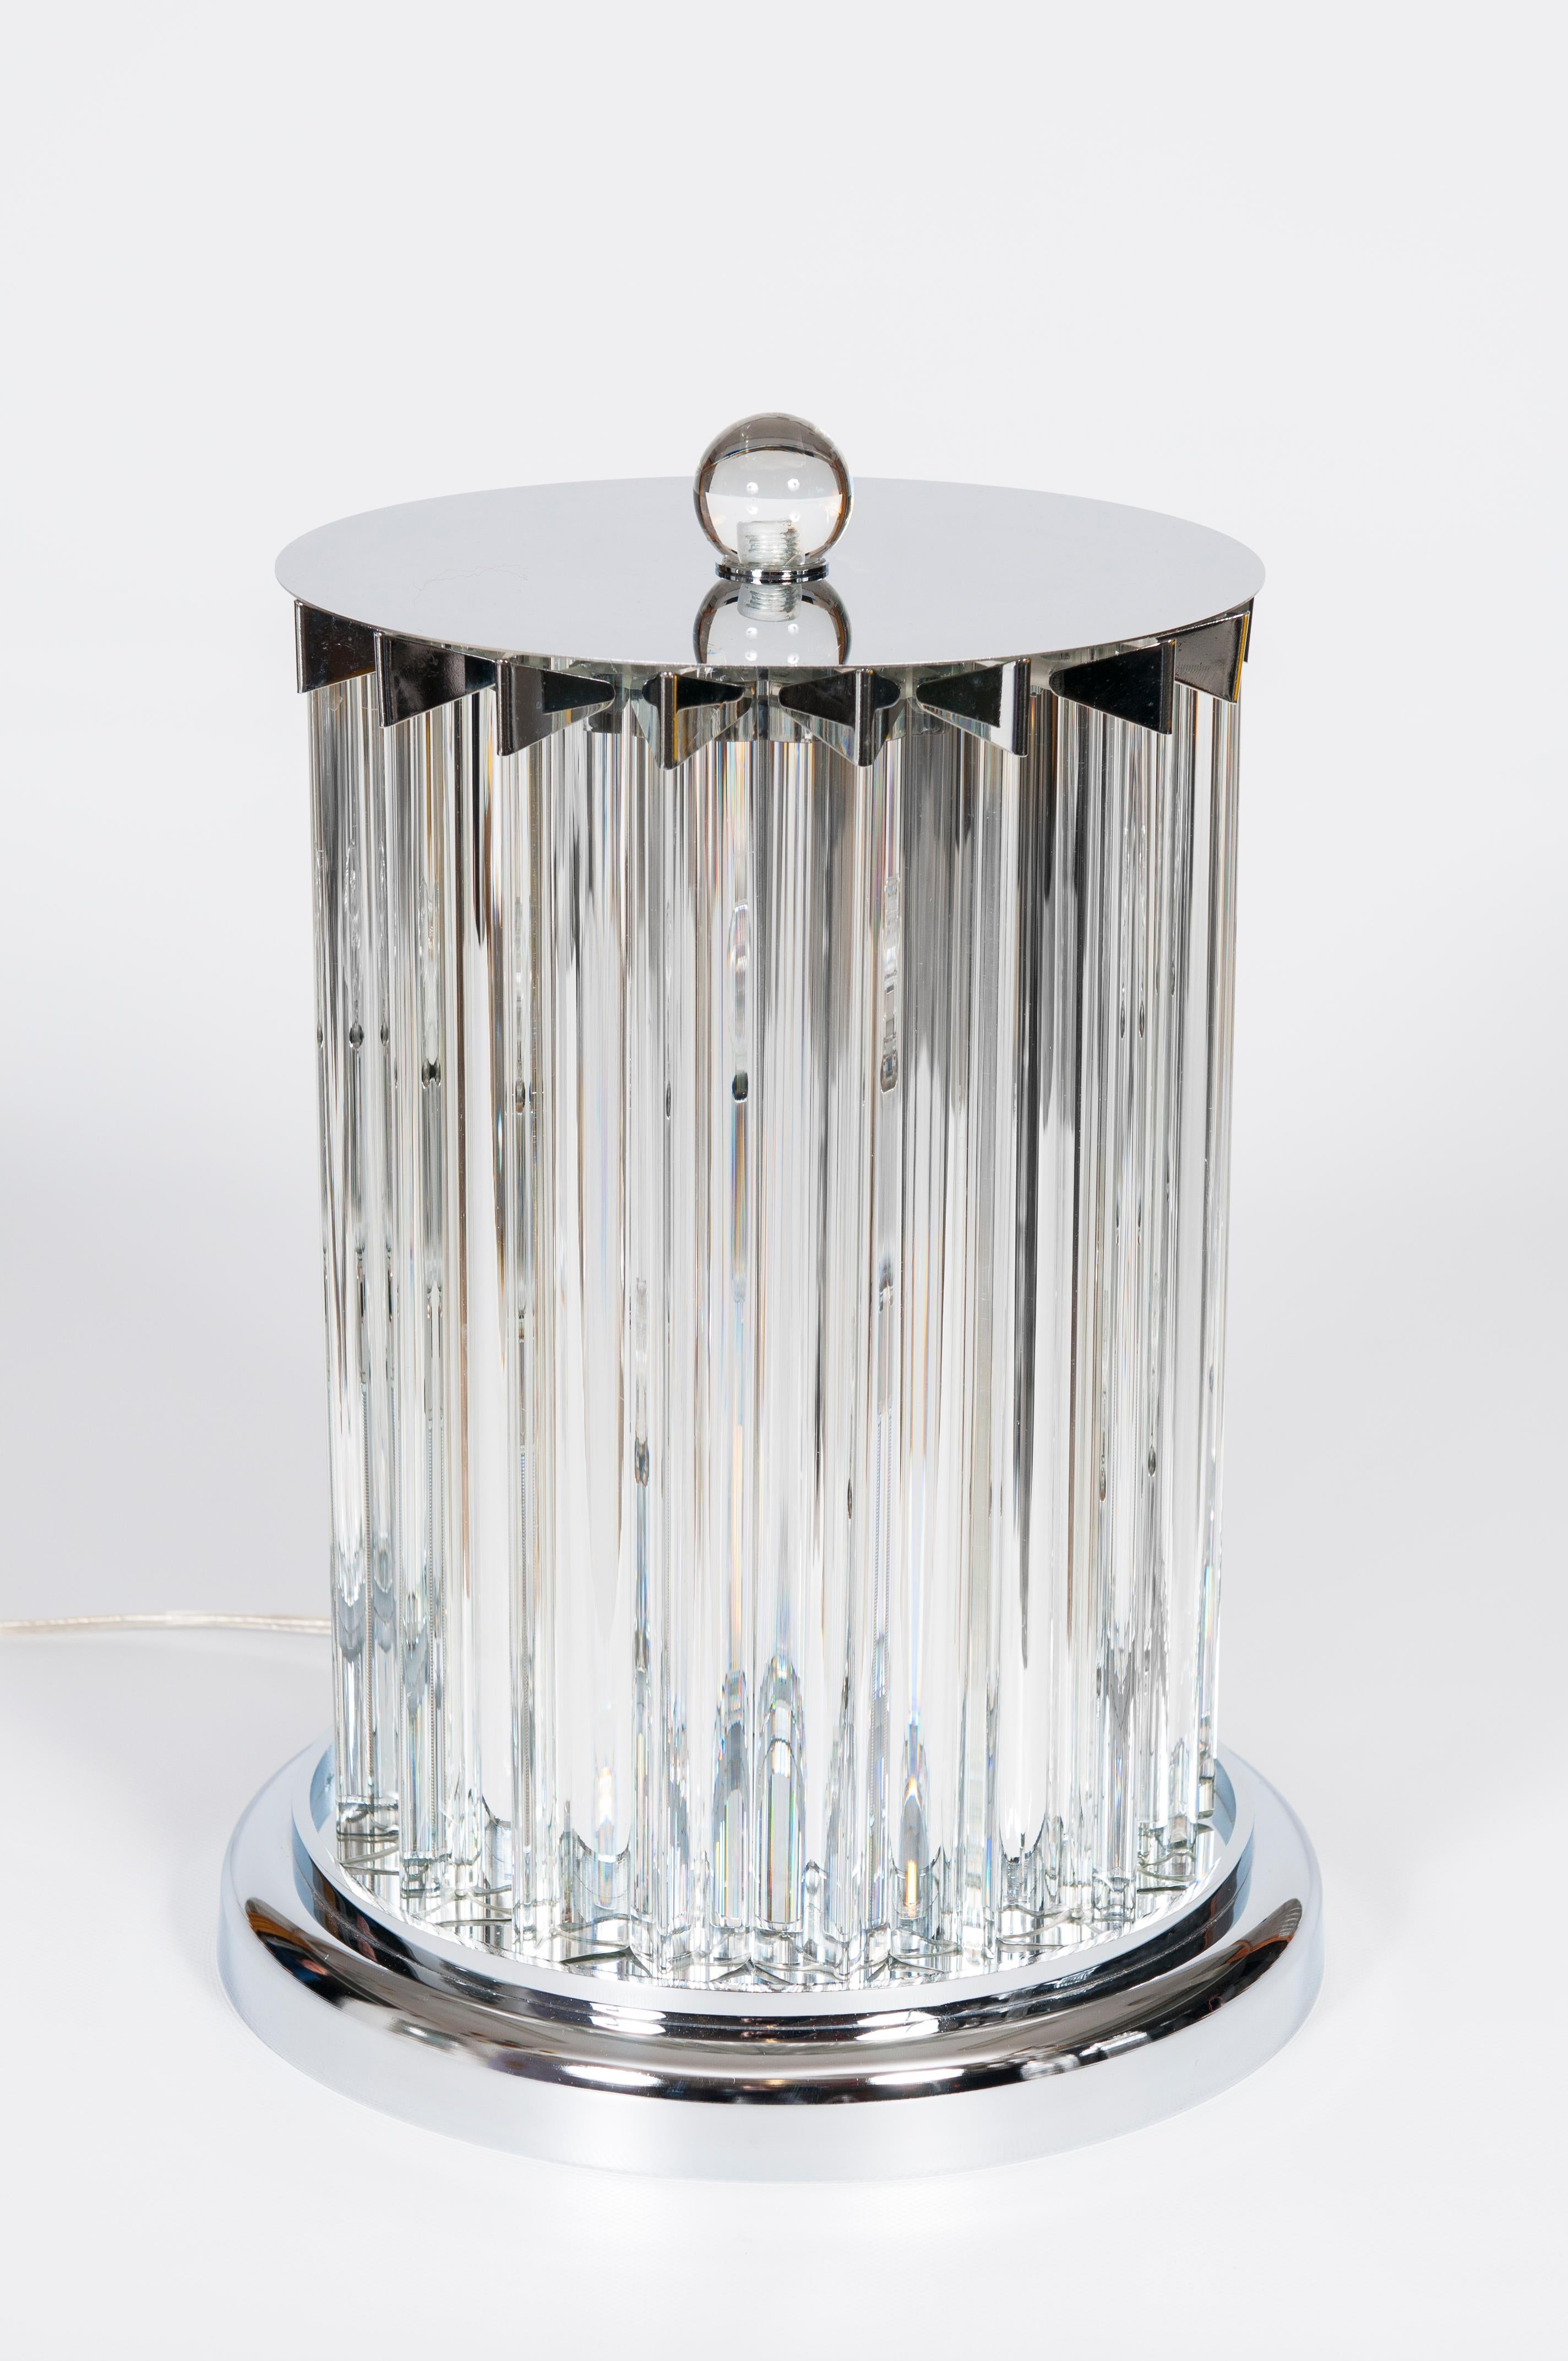 Lampe de table contemporaine en verre de Murano de couleur transparente, Giovanni Dalla Fina, 21ème siècle.
La lampe de table est composée d'éléments en verre transparent avec une base triangulaire qui reflètent la lumière des 2 ampoules centrales.